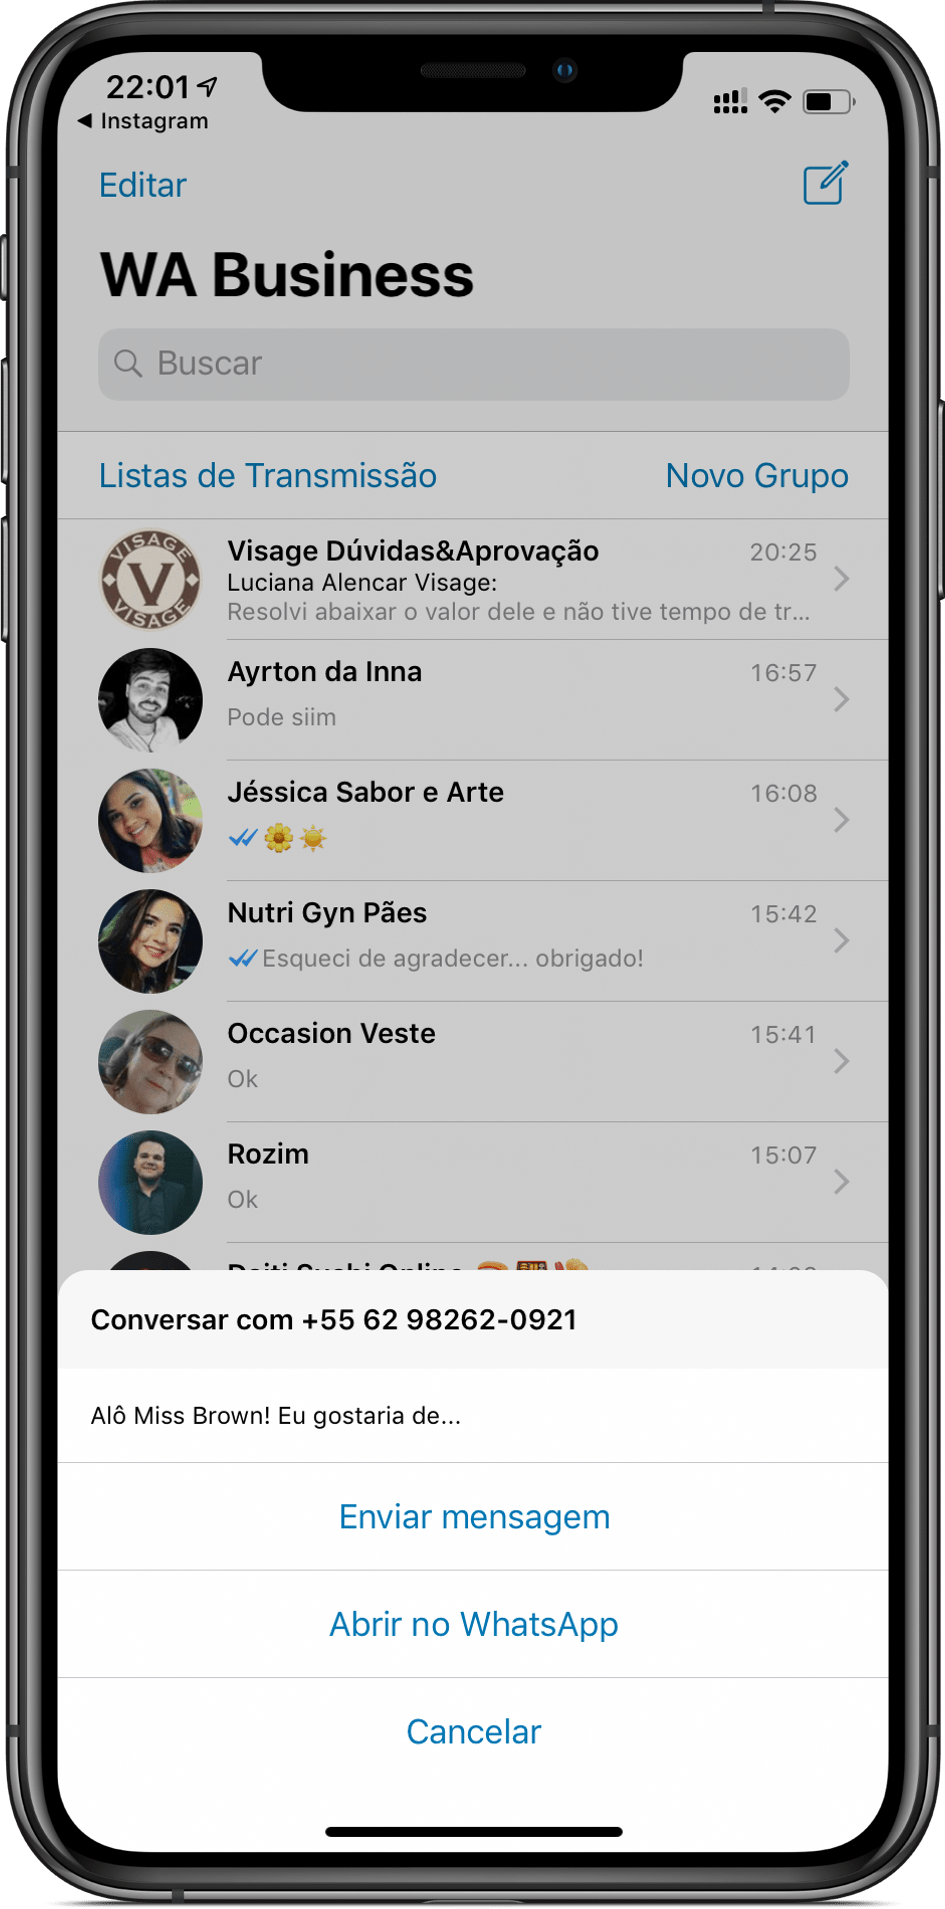 WhatsApp Business - Abrir no WhatsApp